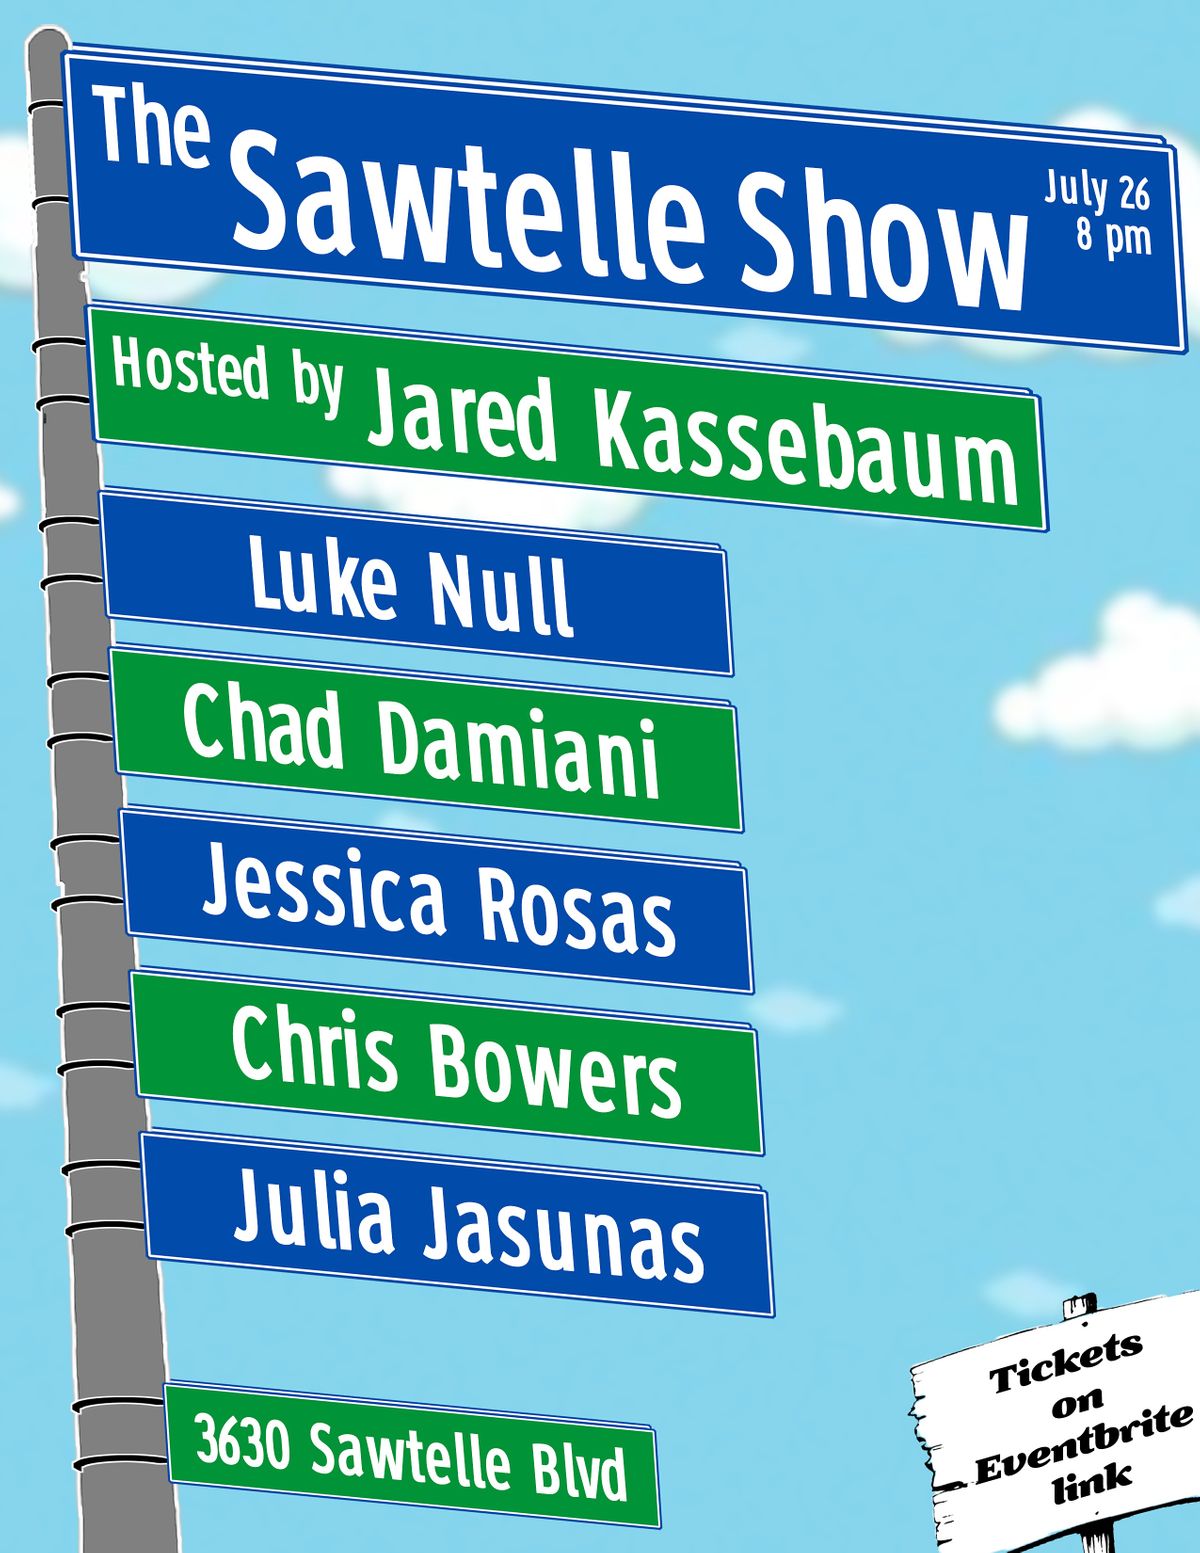 The Sawtelle Show (Mar Vista Comedy Show)